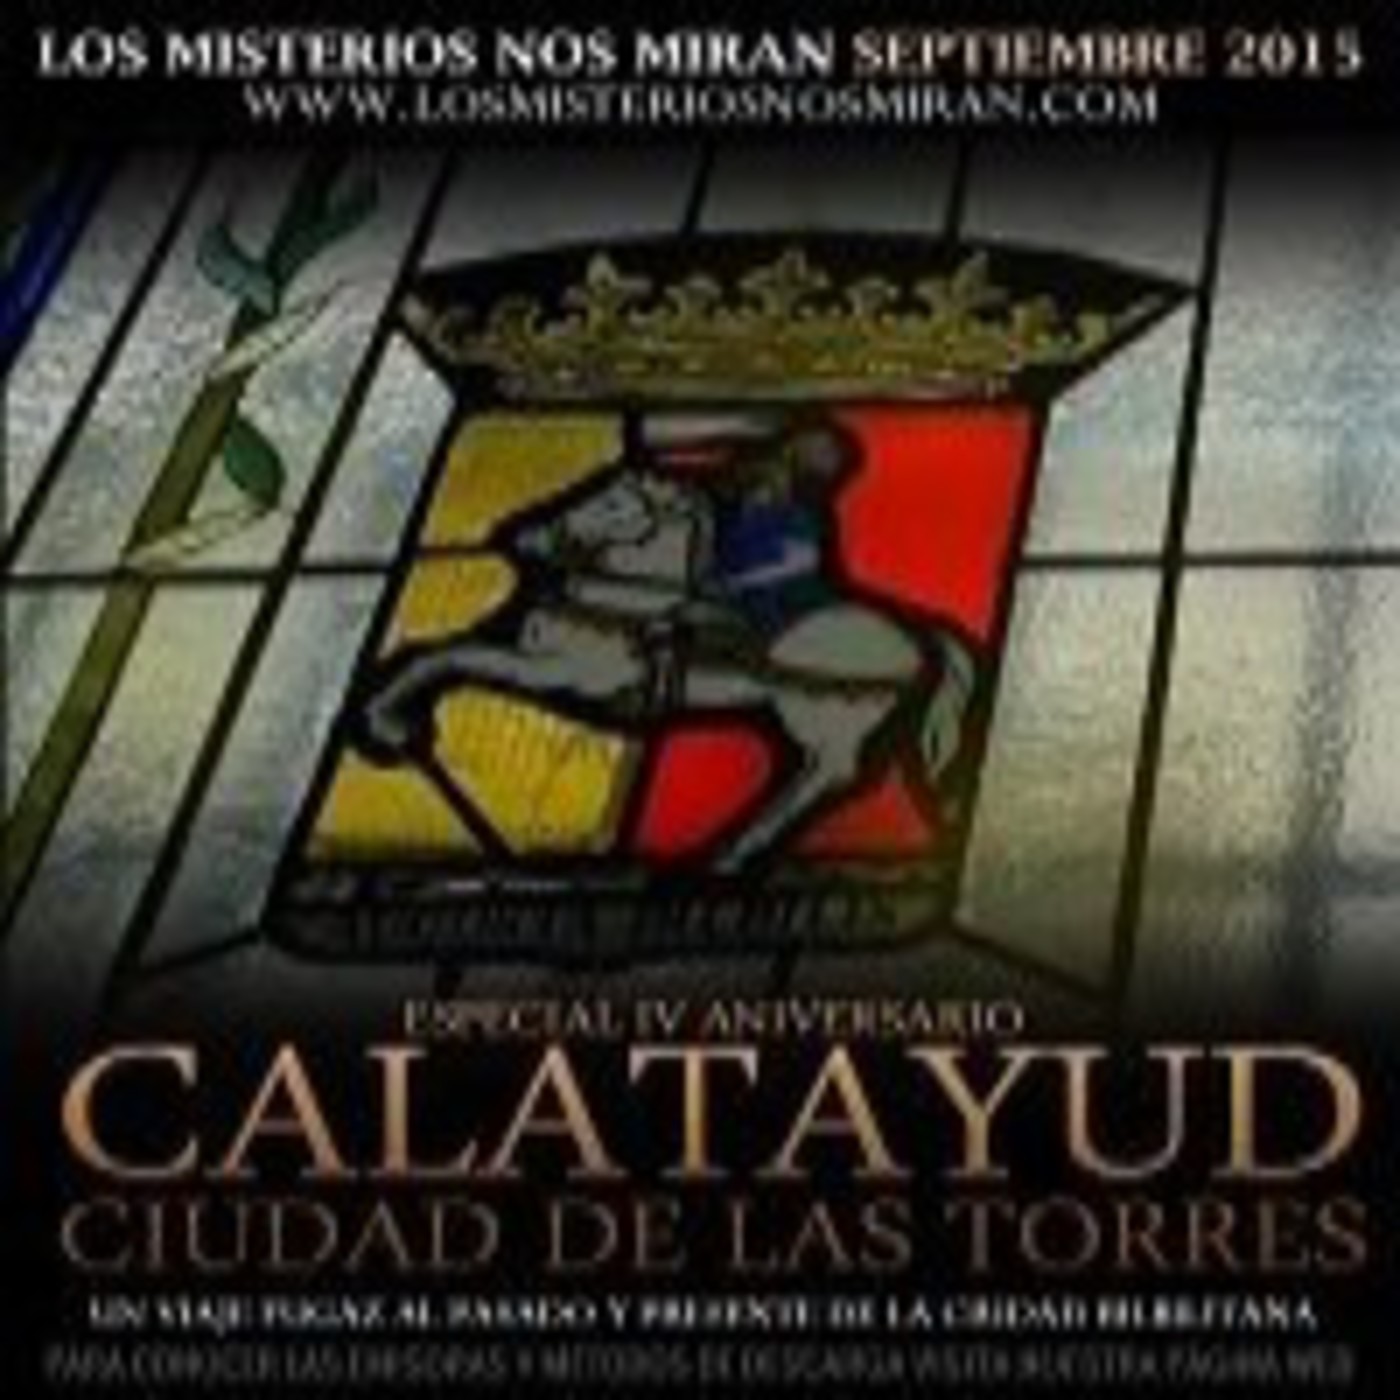 Especial: 'Calatayud, ciudad de las torres: IV Aniversario de Los Misterios Nos Miran'